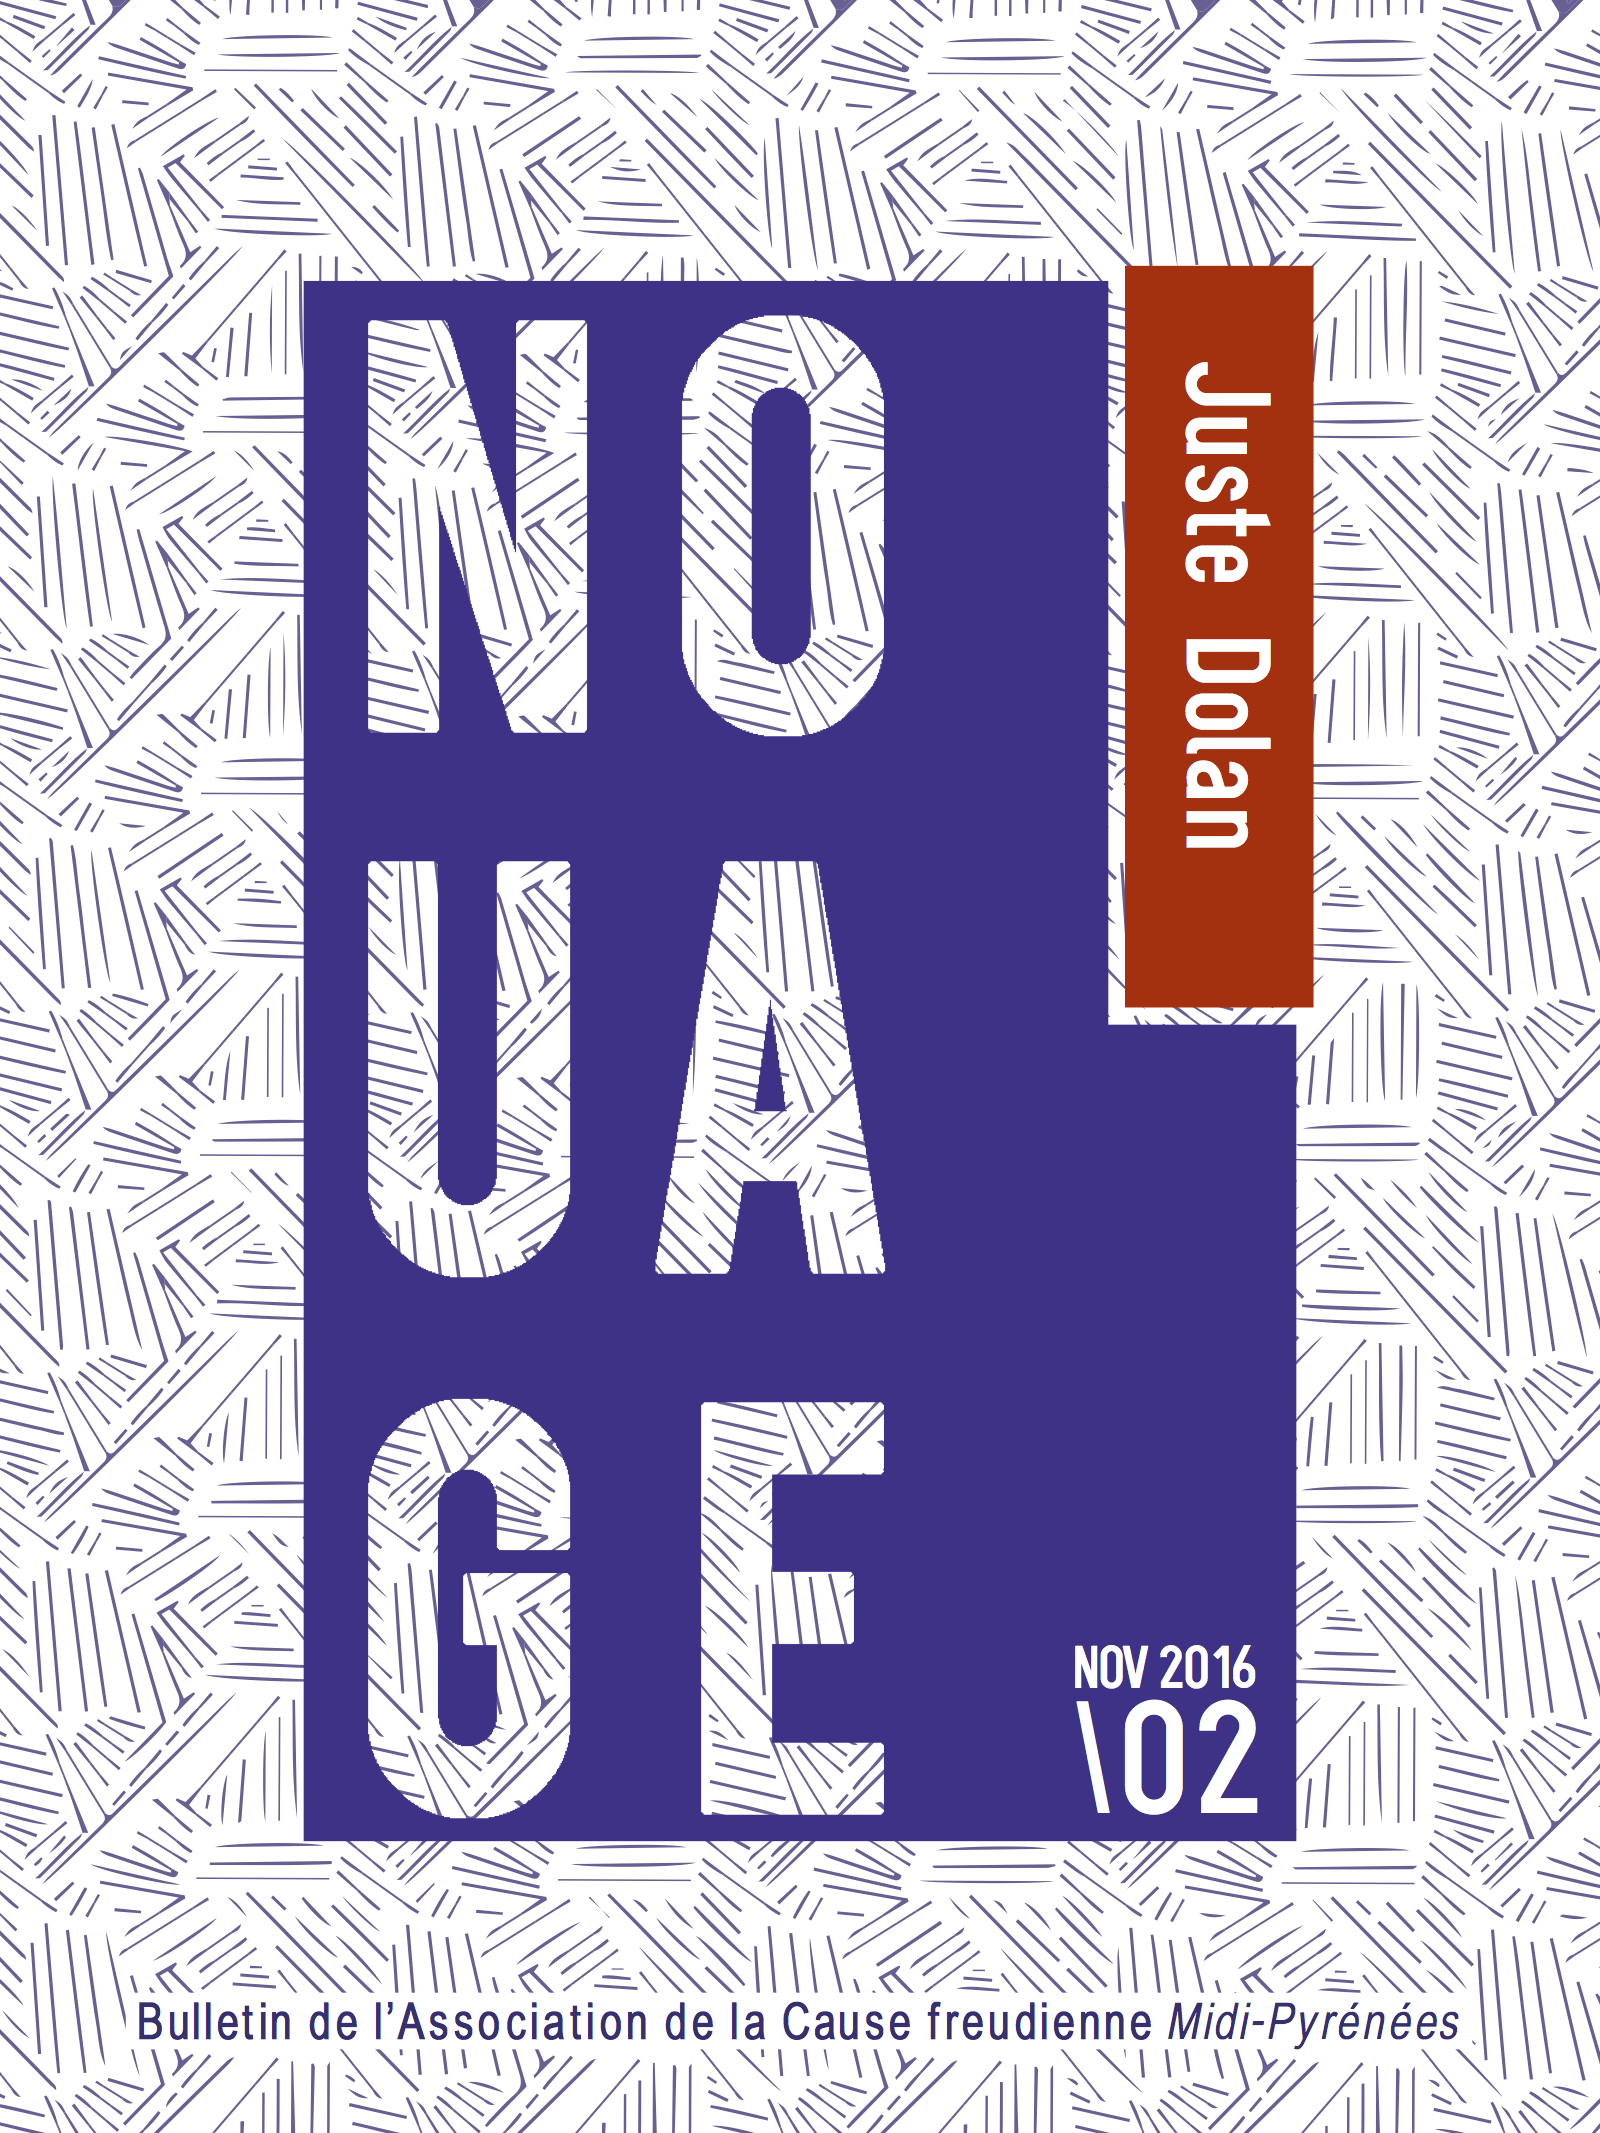 couv-nouage02-nov-16-dolan